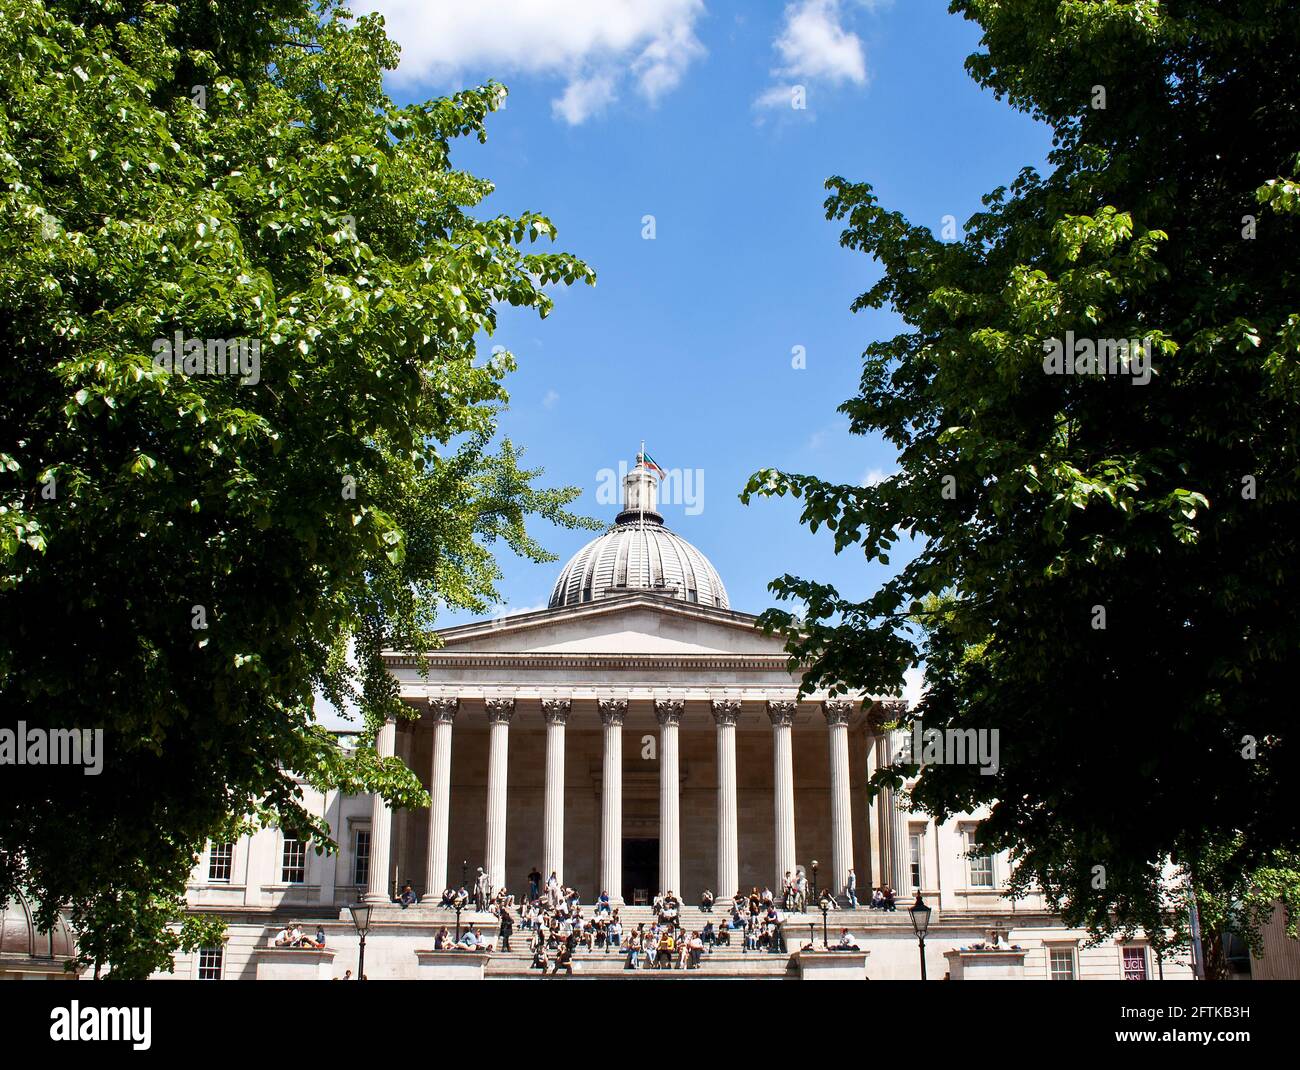 L'edificio principale dell'University College di Londra, una delle migliori università di ricerca del mondo, tra due alberi Foto Stock